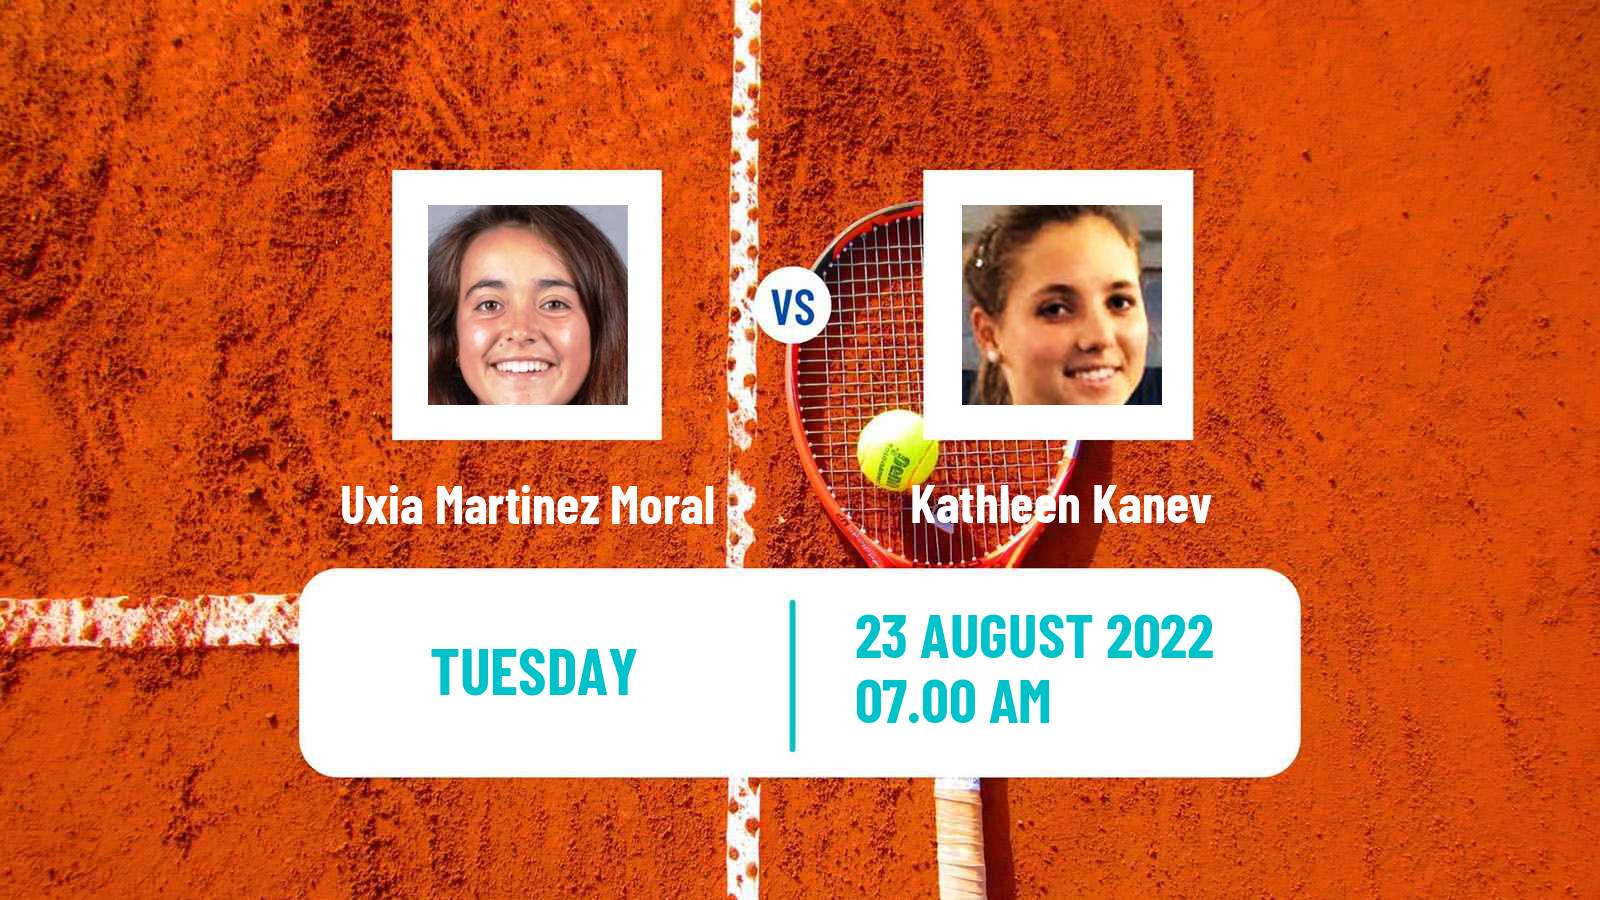 Tennis ITF Tournaments Uxia Martinez Moral - Kathleen Kanev